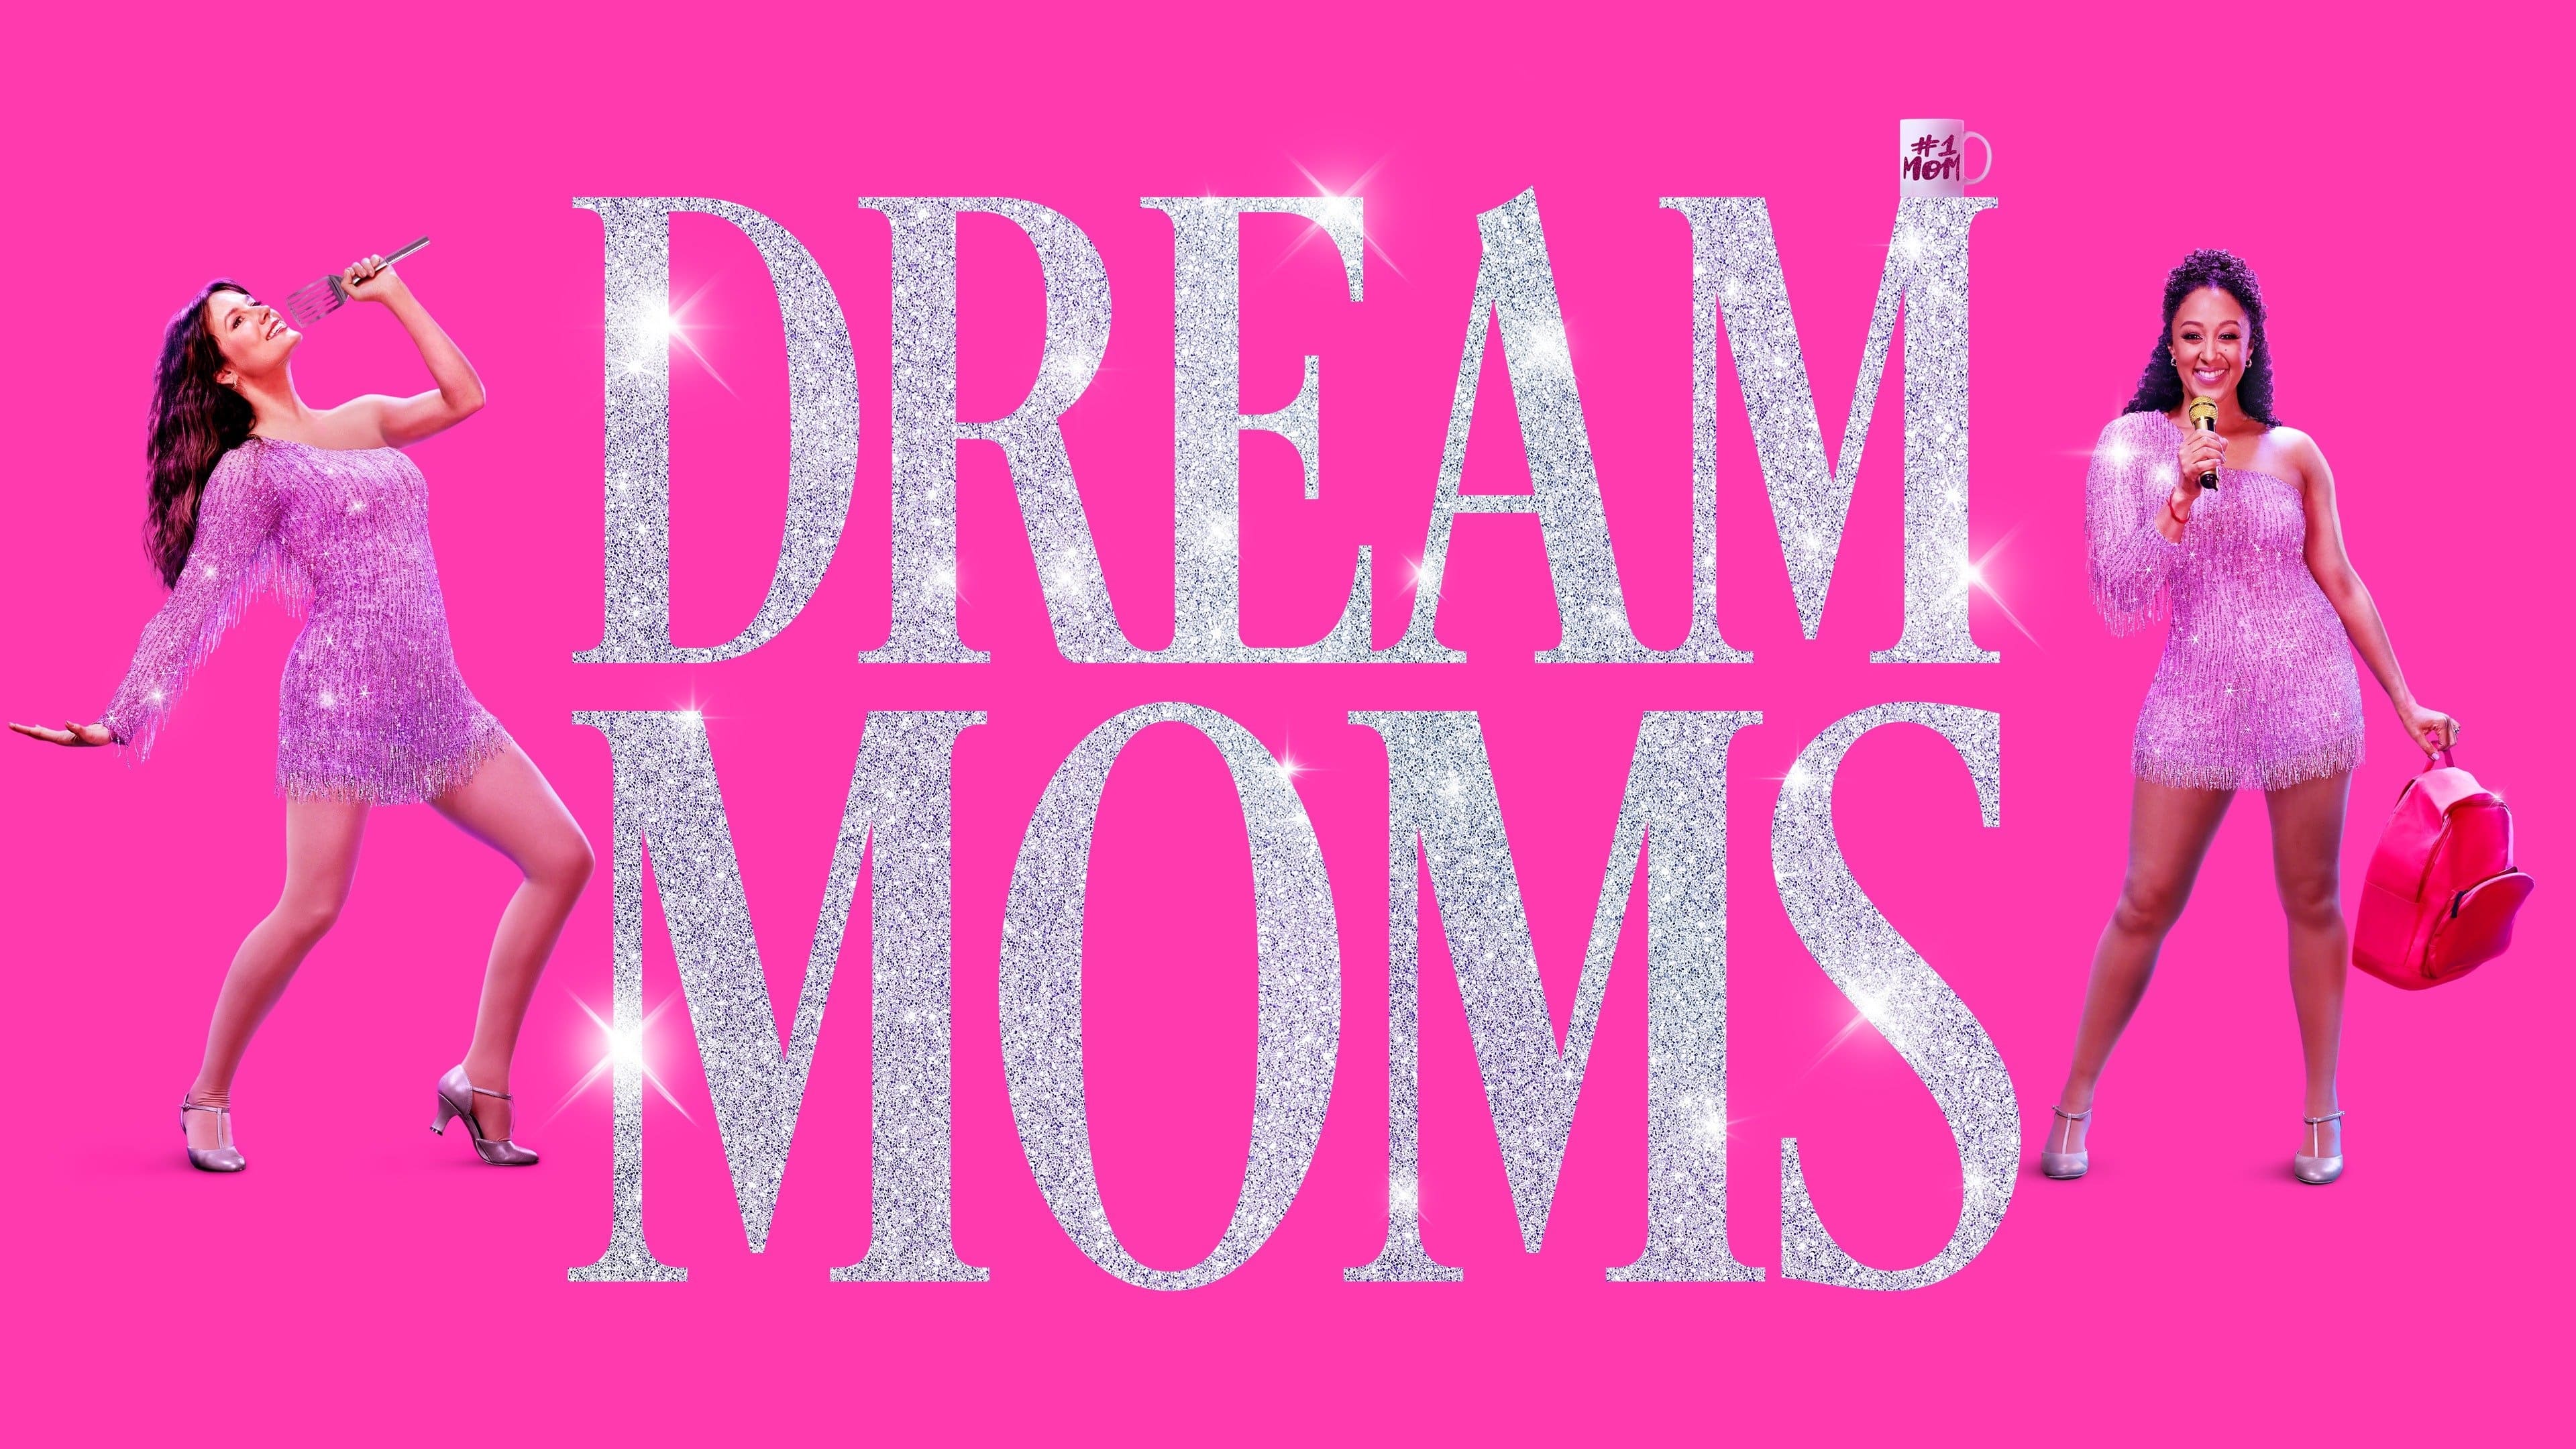 Dream Moms (2023)